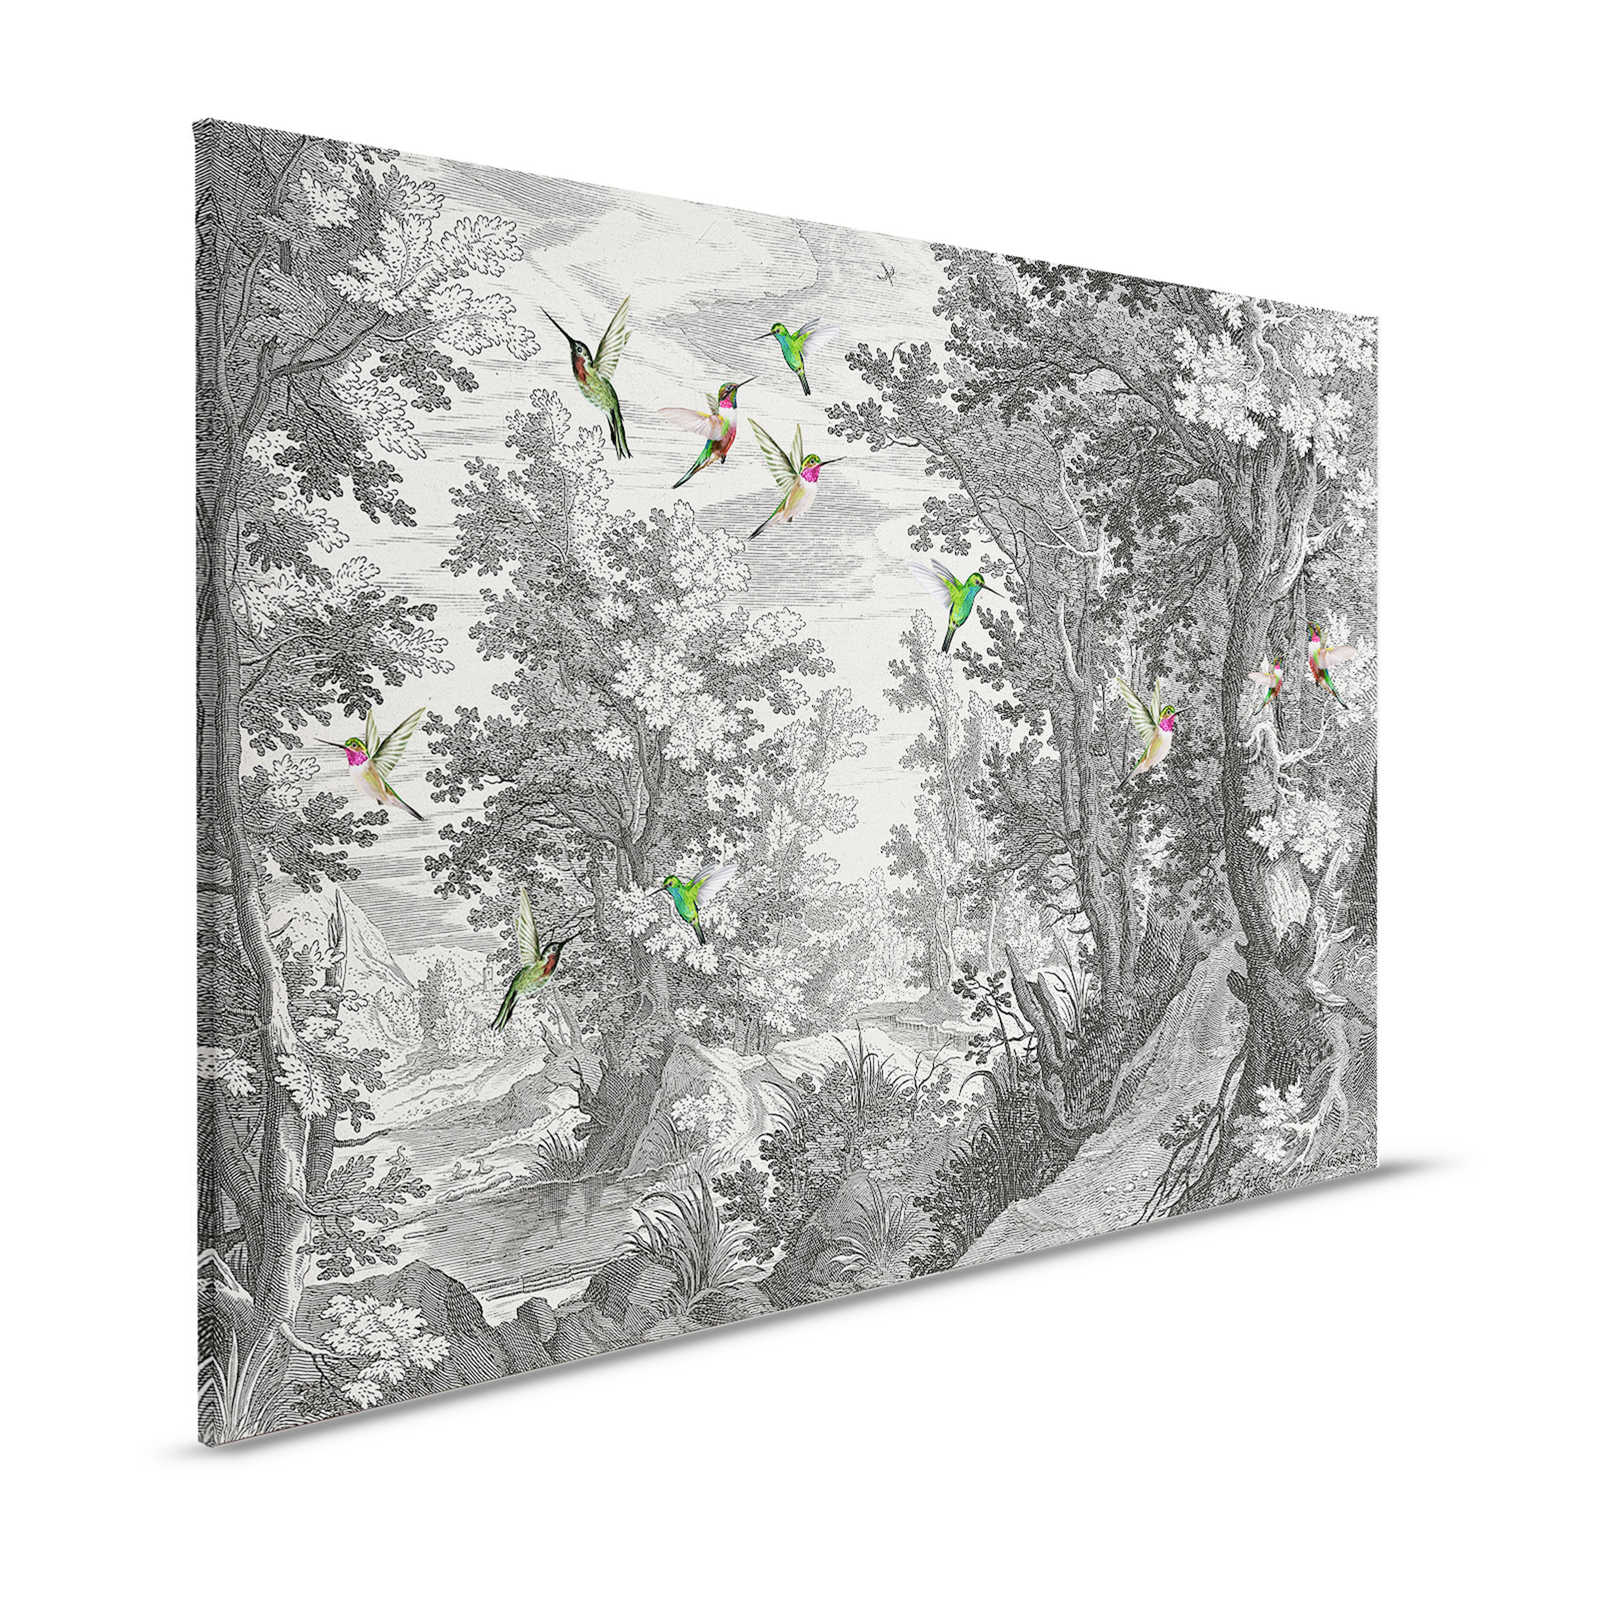         Fancy Forest 1 - Landschaft Leinwandbild Kunstdruck mit Vögeln – 1,20 m x 0,80 m
    